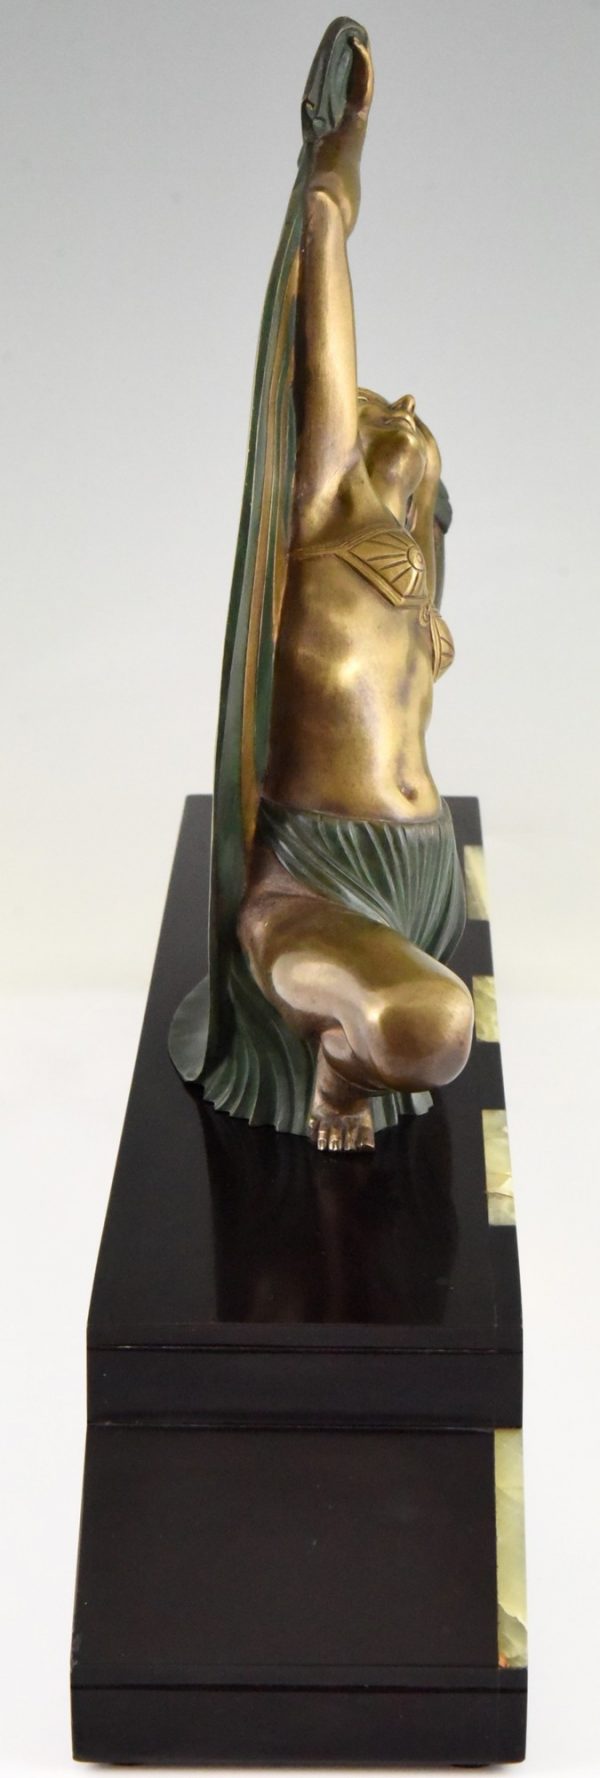 Sculpture en bronze Art Deco danseuse au drapé